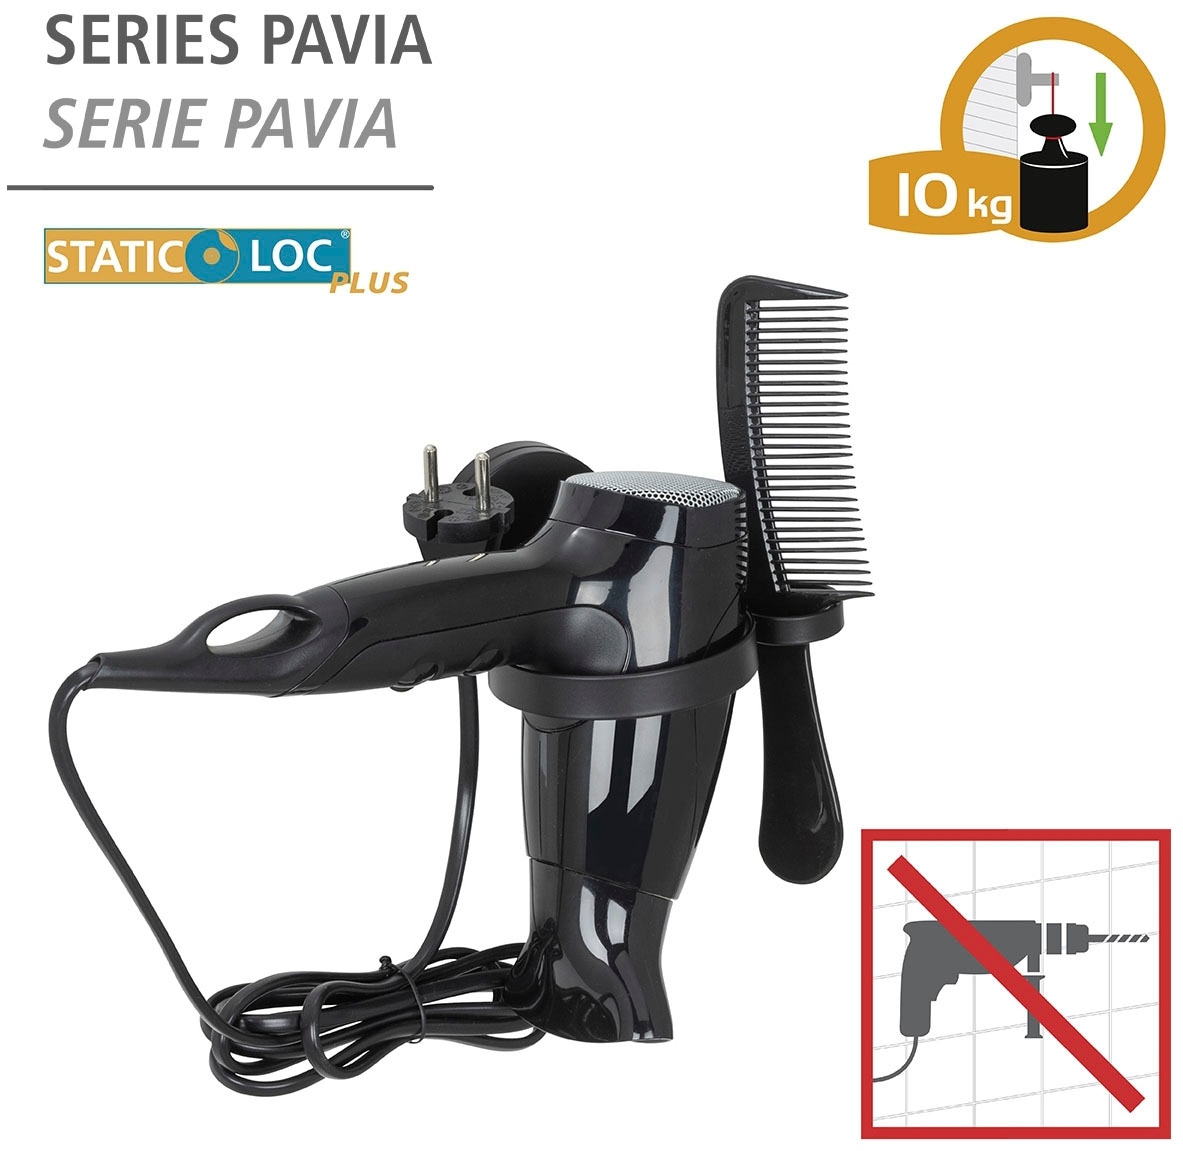 WENKO Haartrocknerhalter »Static-Loc® Plus Pavia«, Befestigen ohne Bohren  im OTTO Online Shop